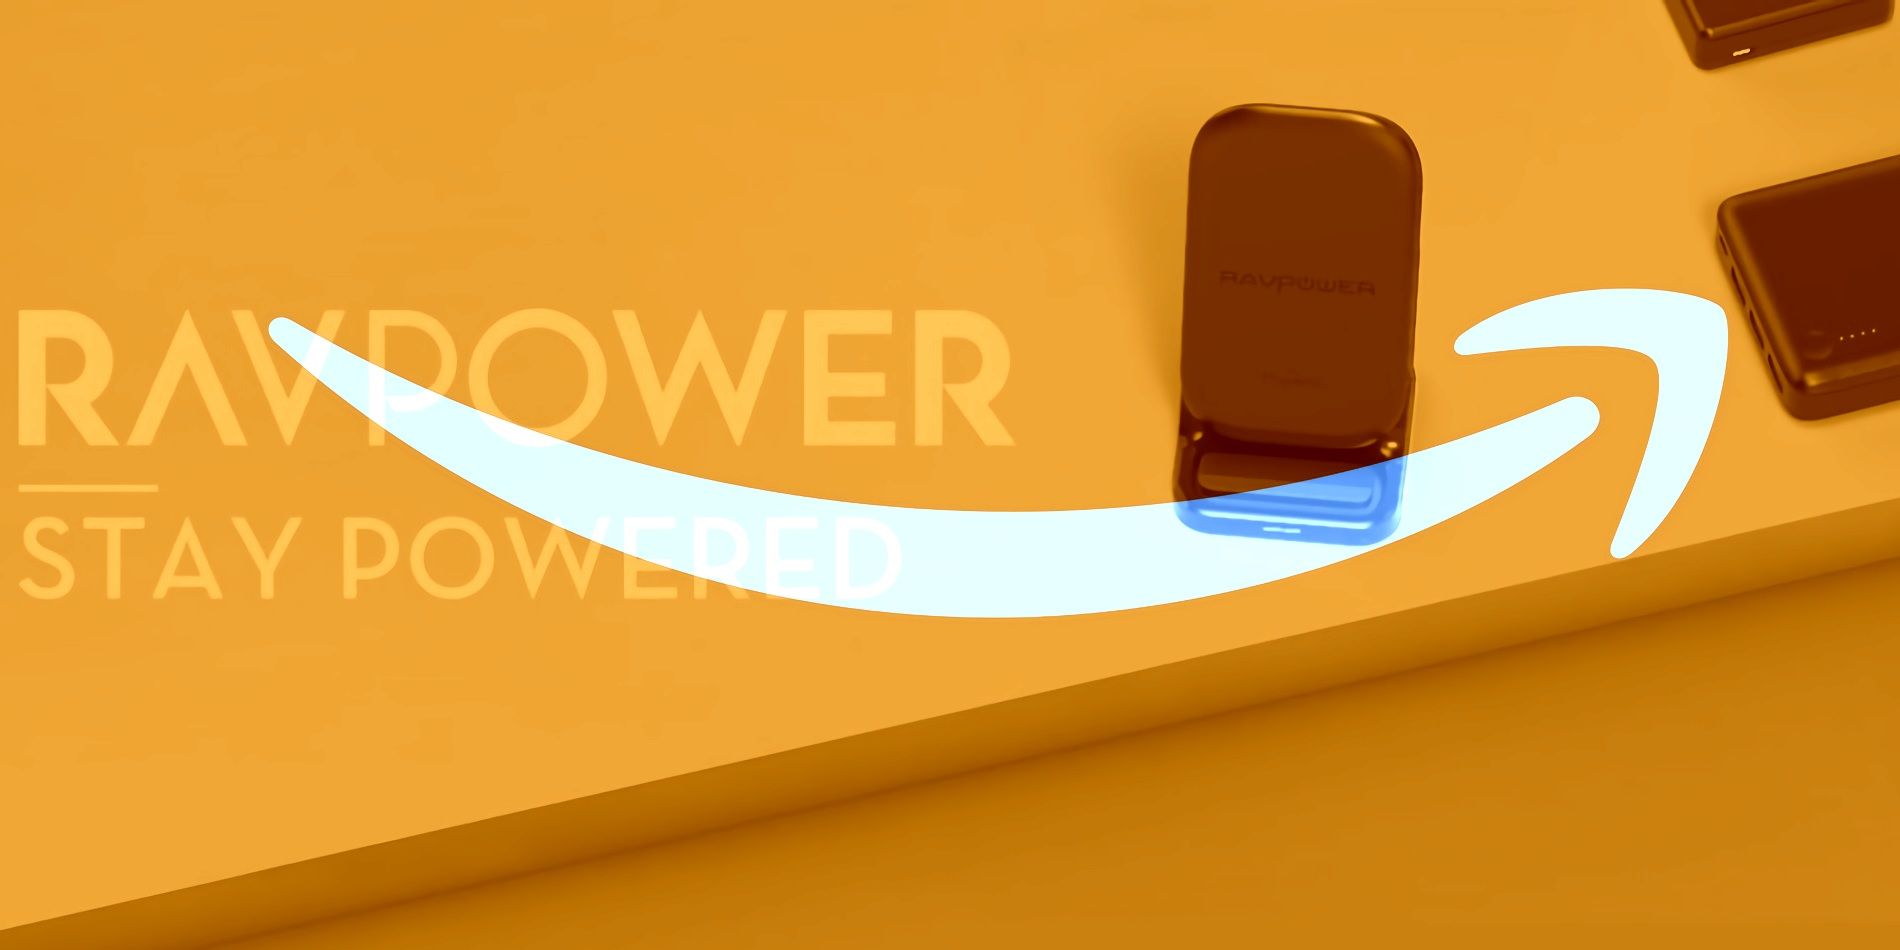 Por qué Amazon ya no incluye productos RAVPower, Vava y TaoTronics